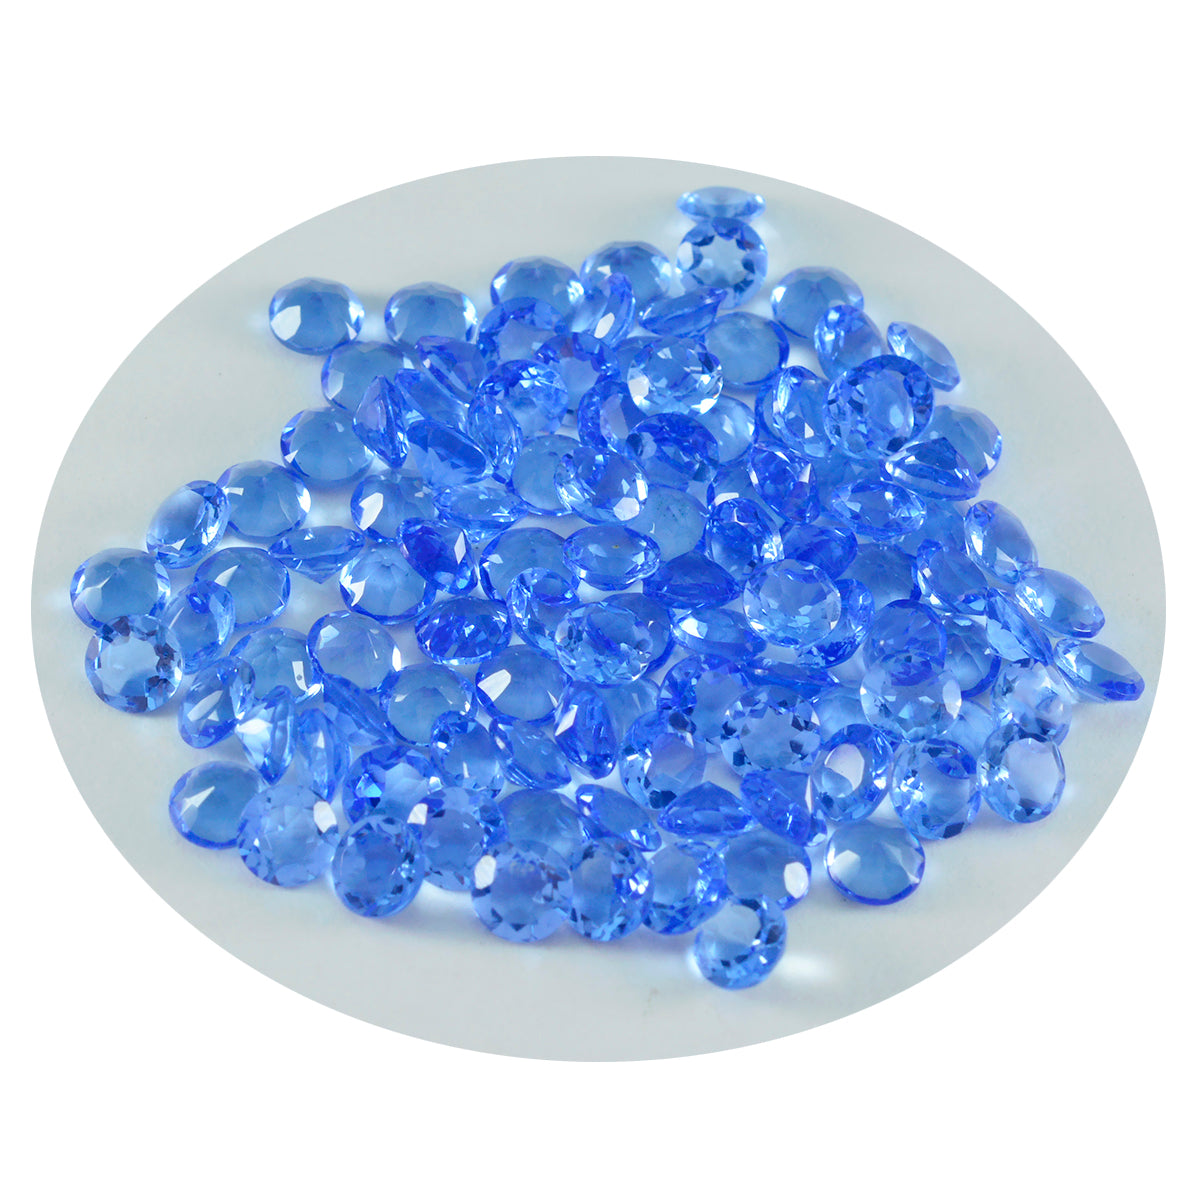 riyogems 1pc ブルー サファイア CZ ファセット 3x3 mm ラウンド形状の素晴らしい品質の宝石